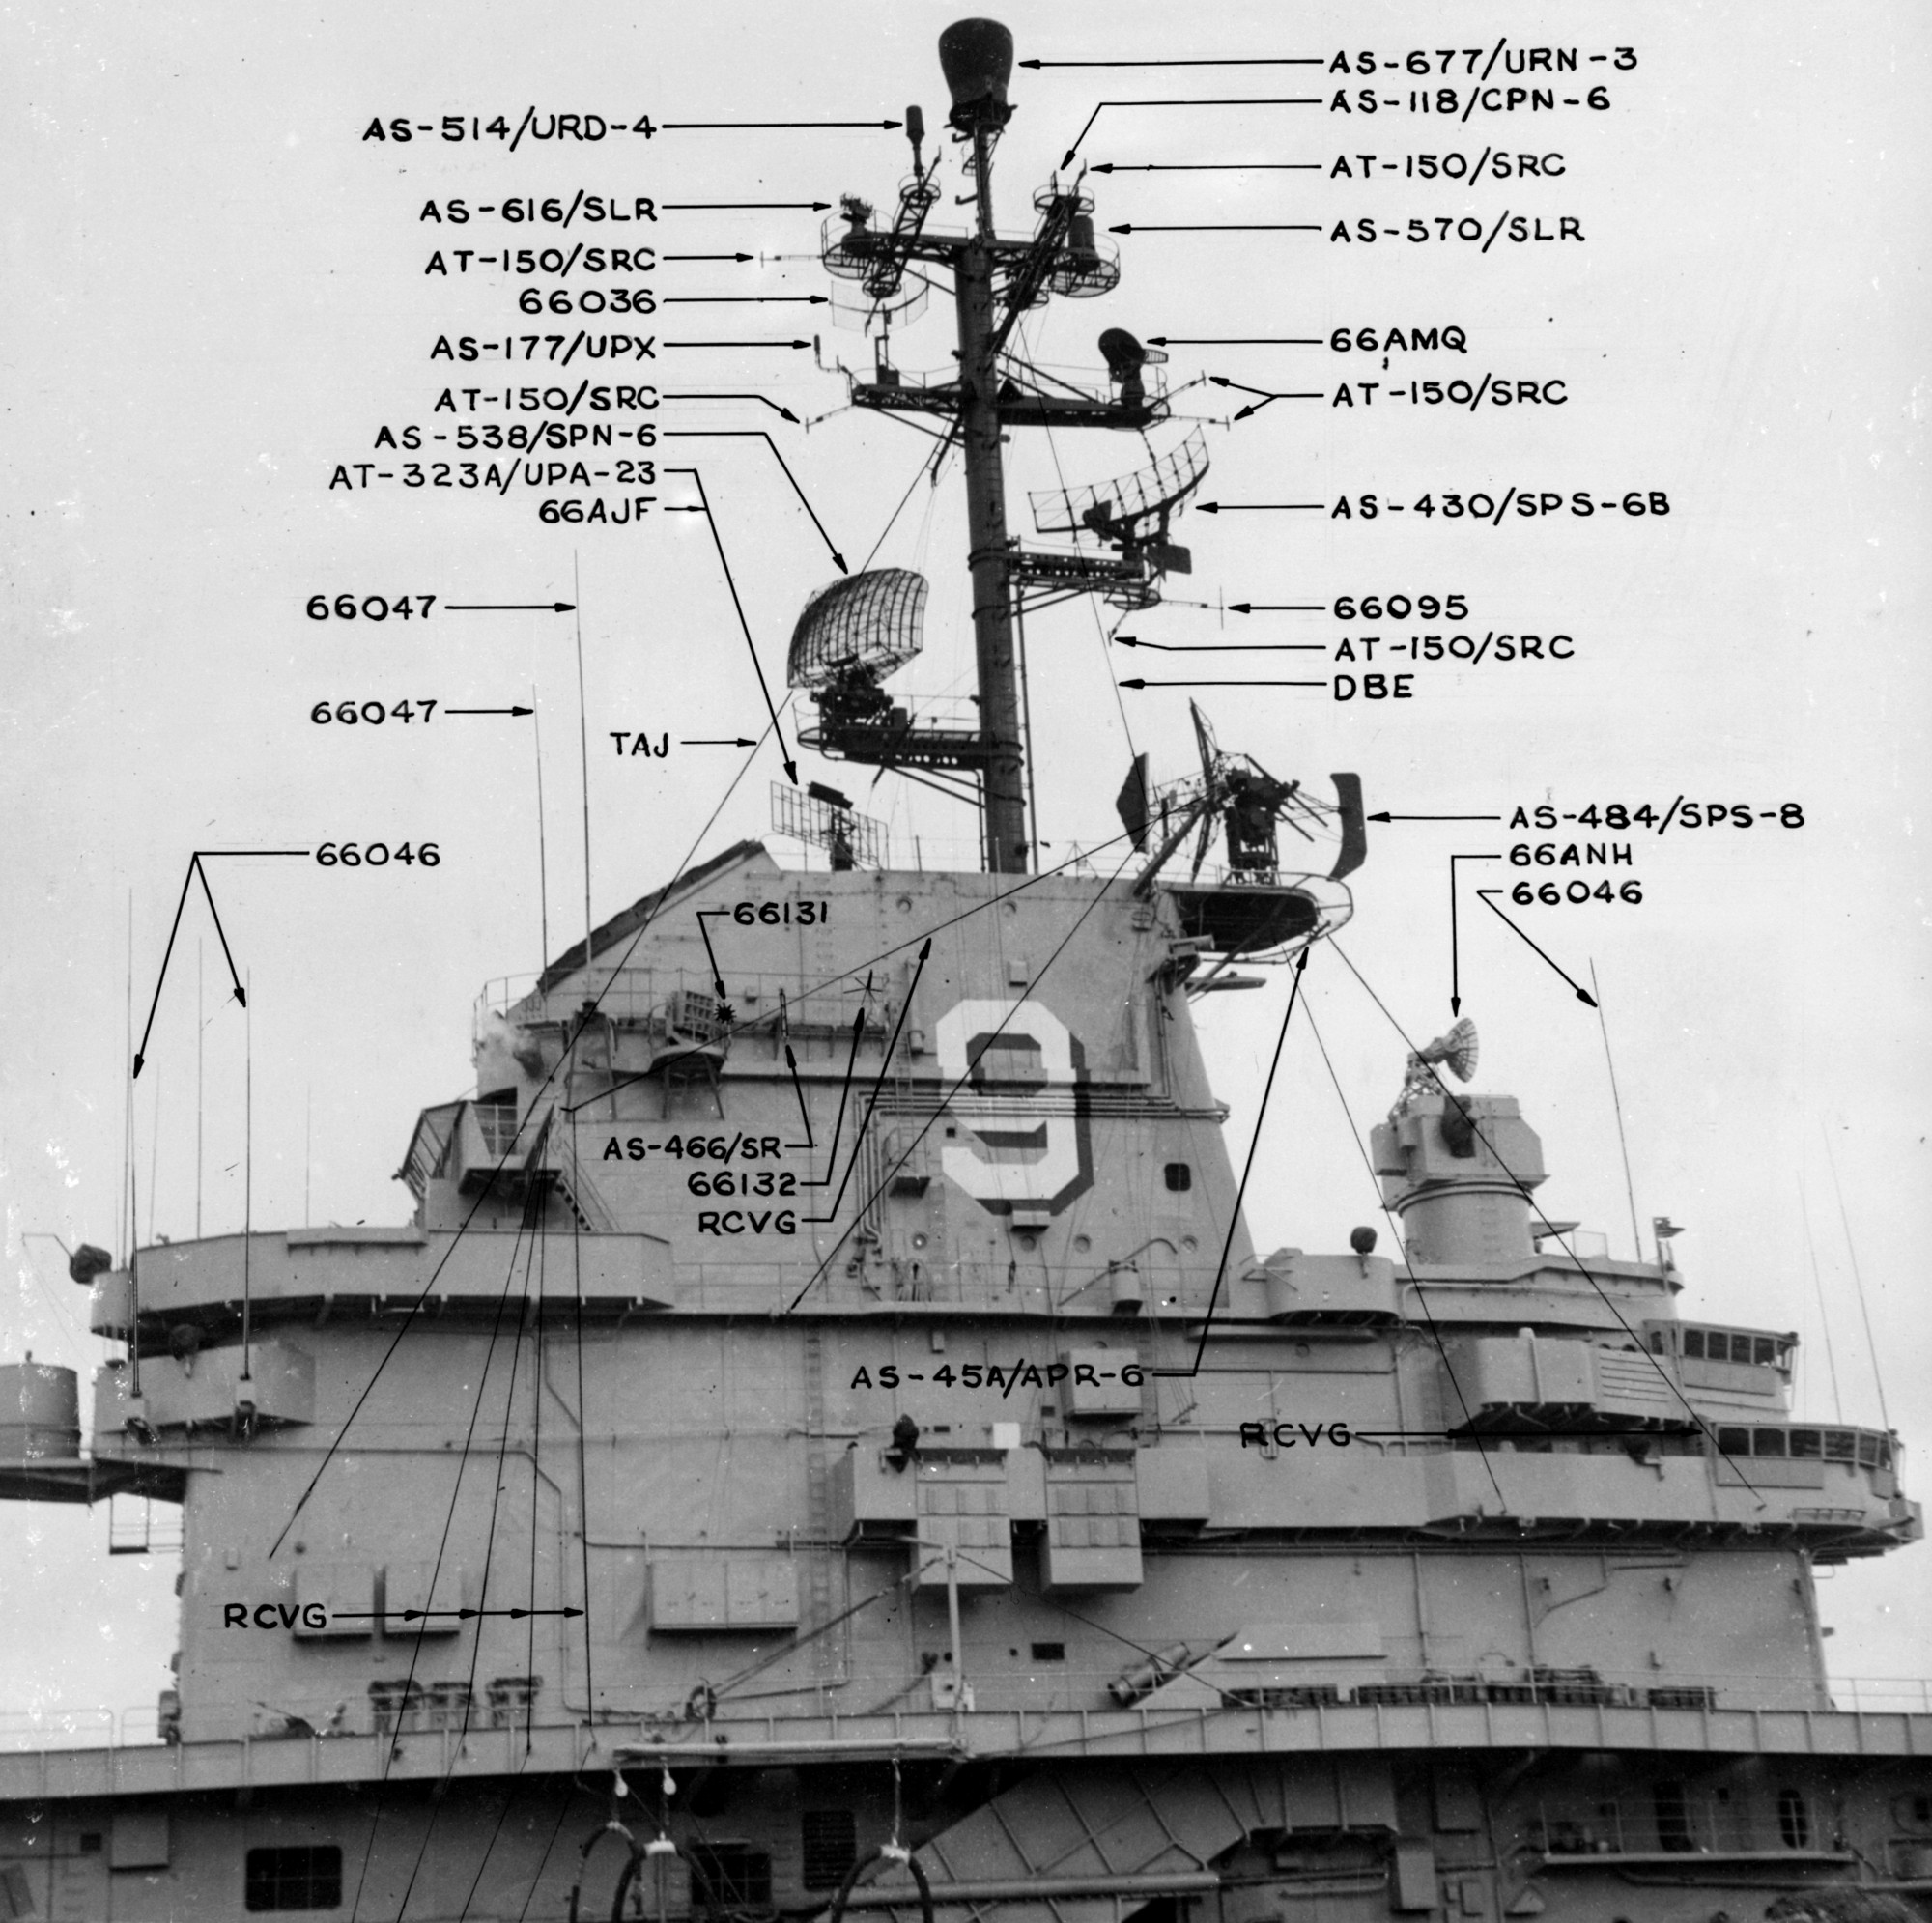 cva-9 uss essex aircraft carrier radar antenna details 56